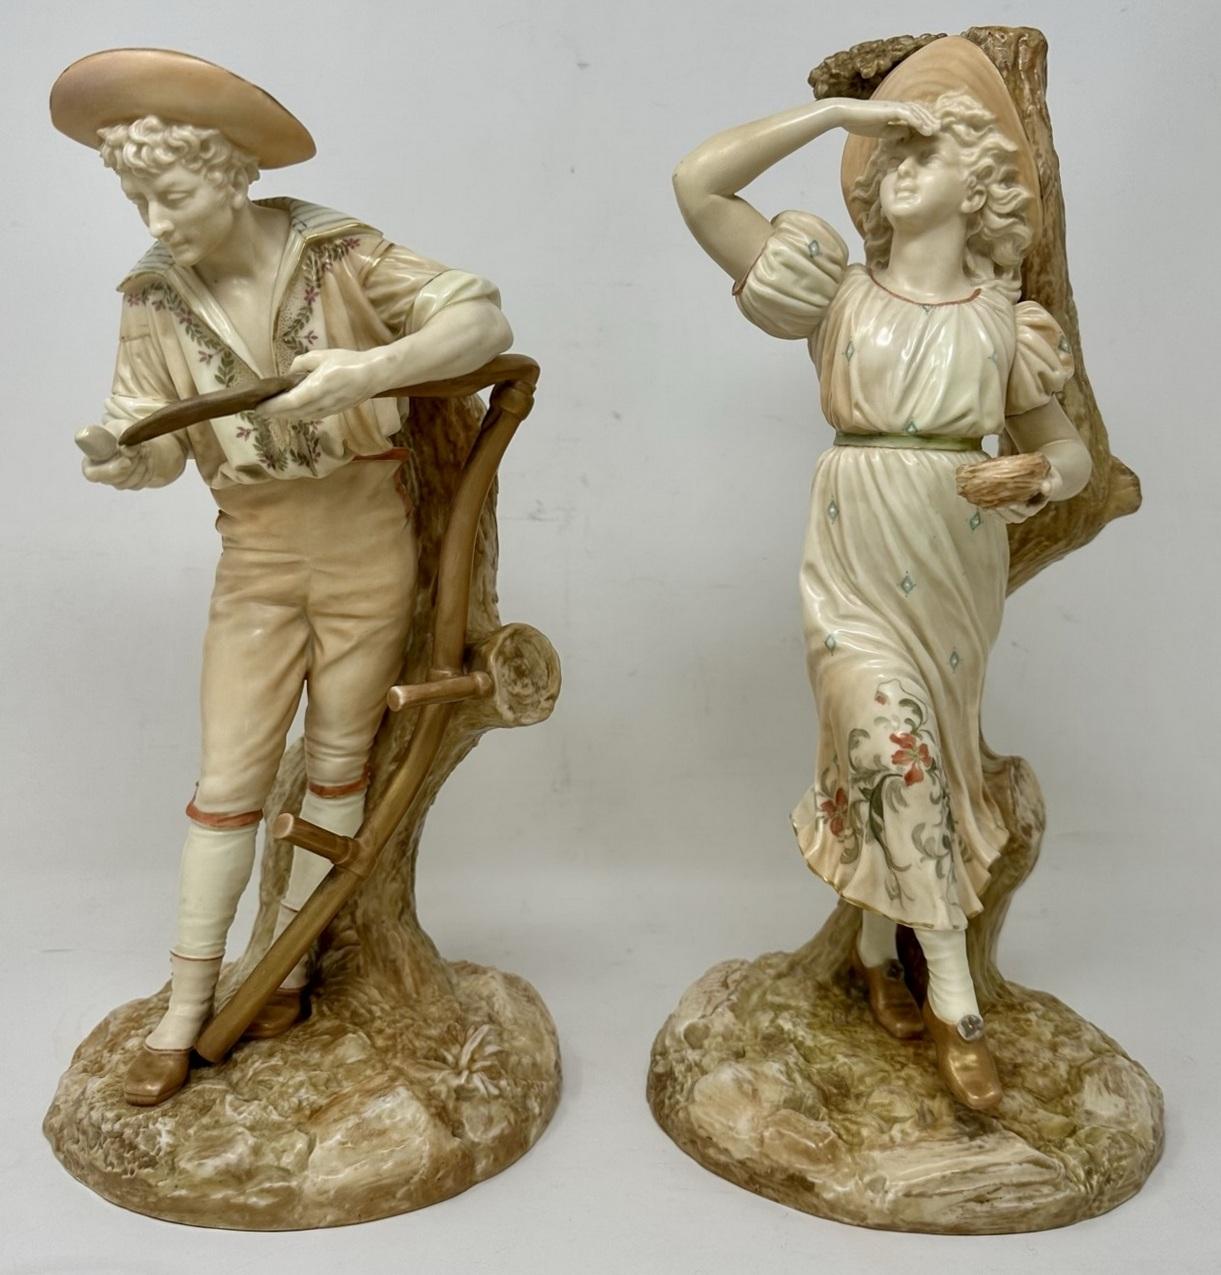 Paire imposante de figurines en pied peintes à la main par James Hadley en Royal Worcester anglais, décorées dans des couleurs pastel avec des rehauts de dorure, dernier quart du dix-neuvième siècle. 

Superbement modélisés, un homme aiguisant sa